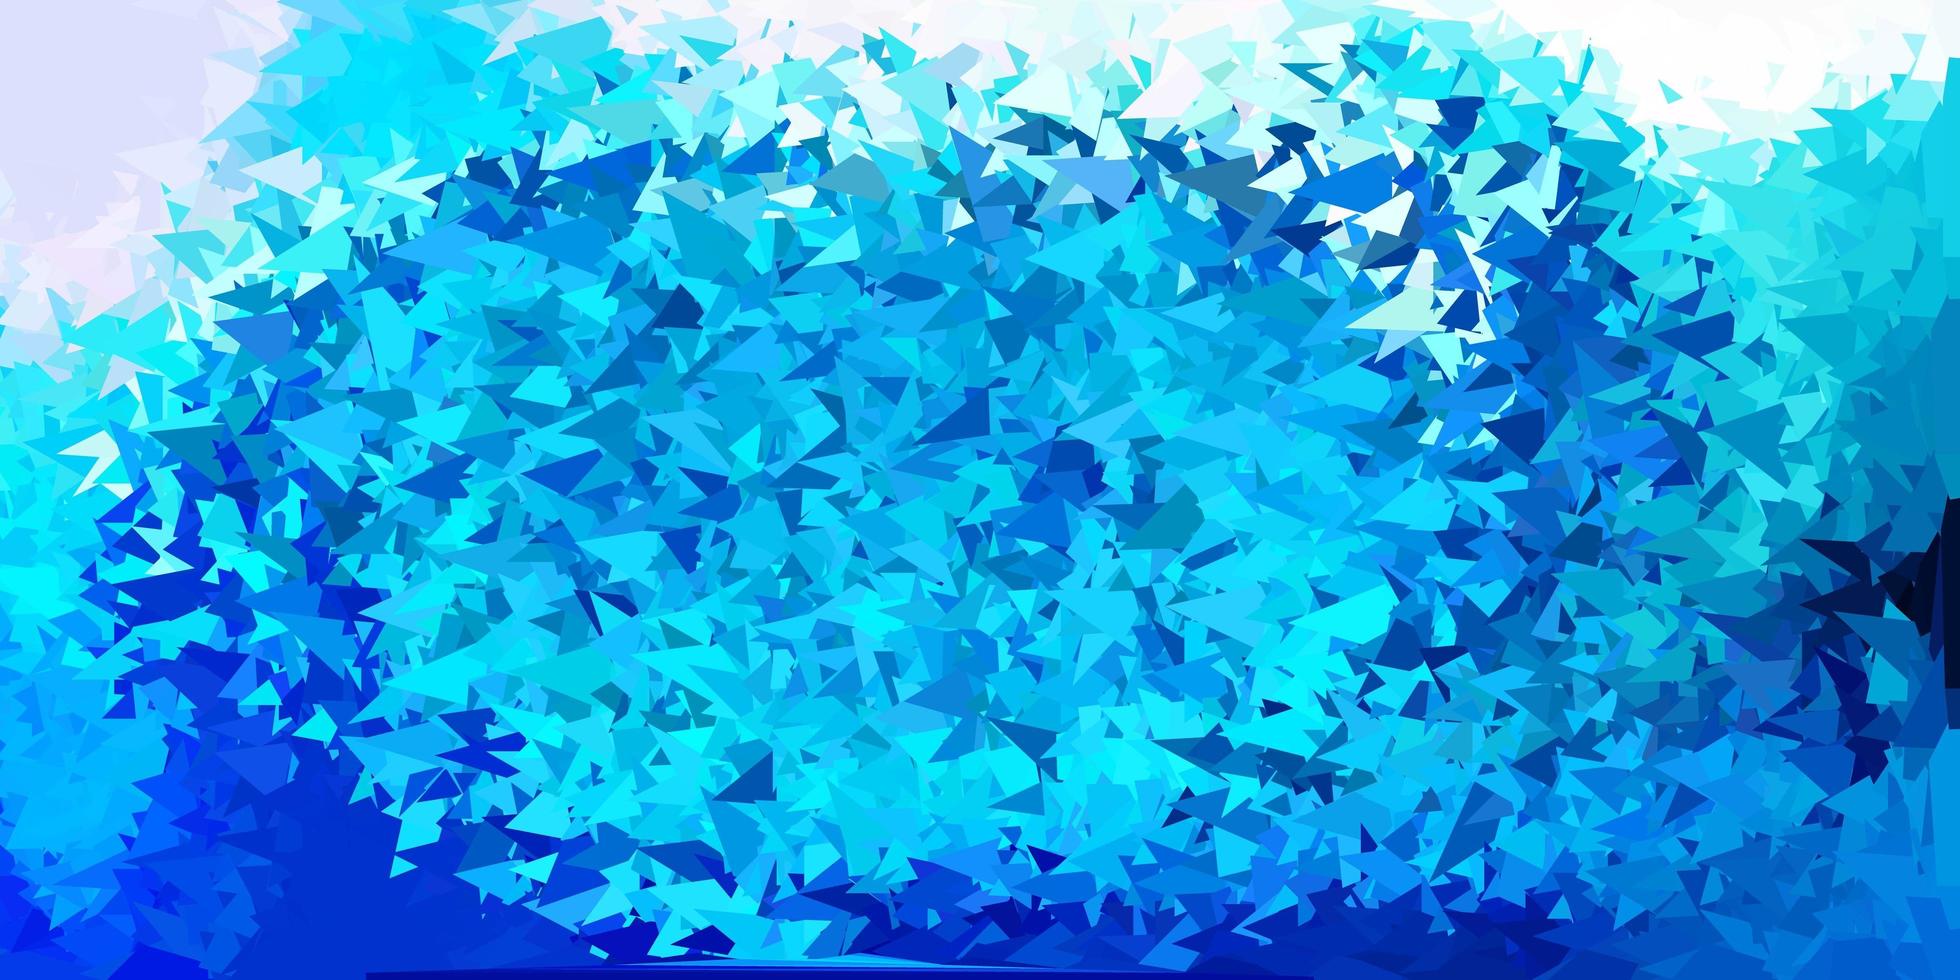 cenário poligonal de vetor azul claro.